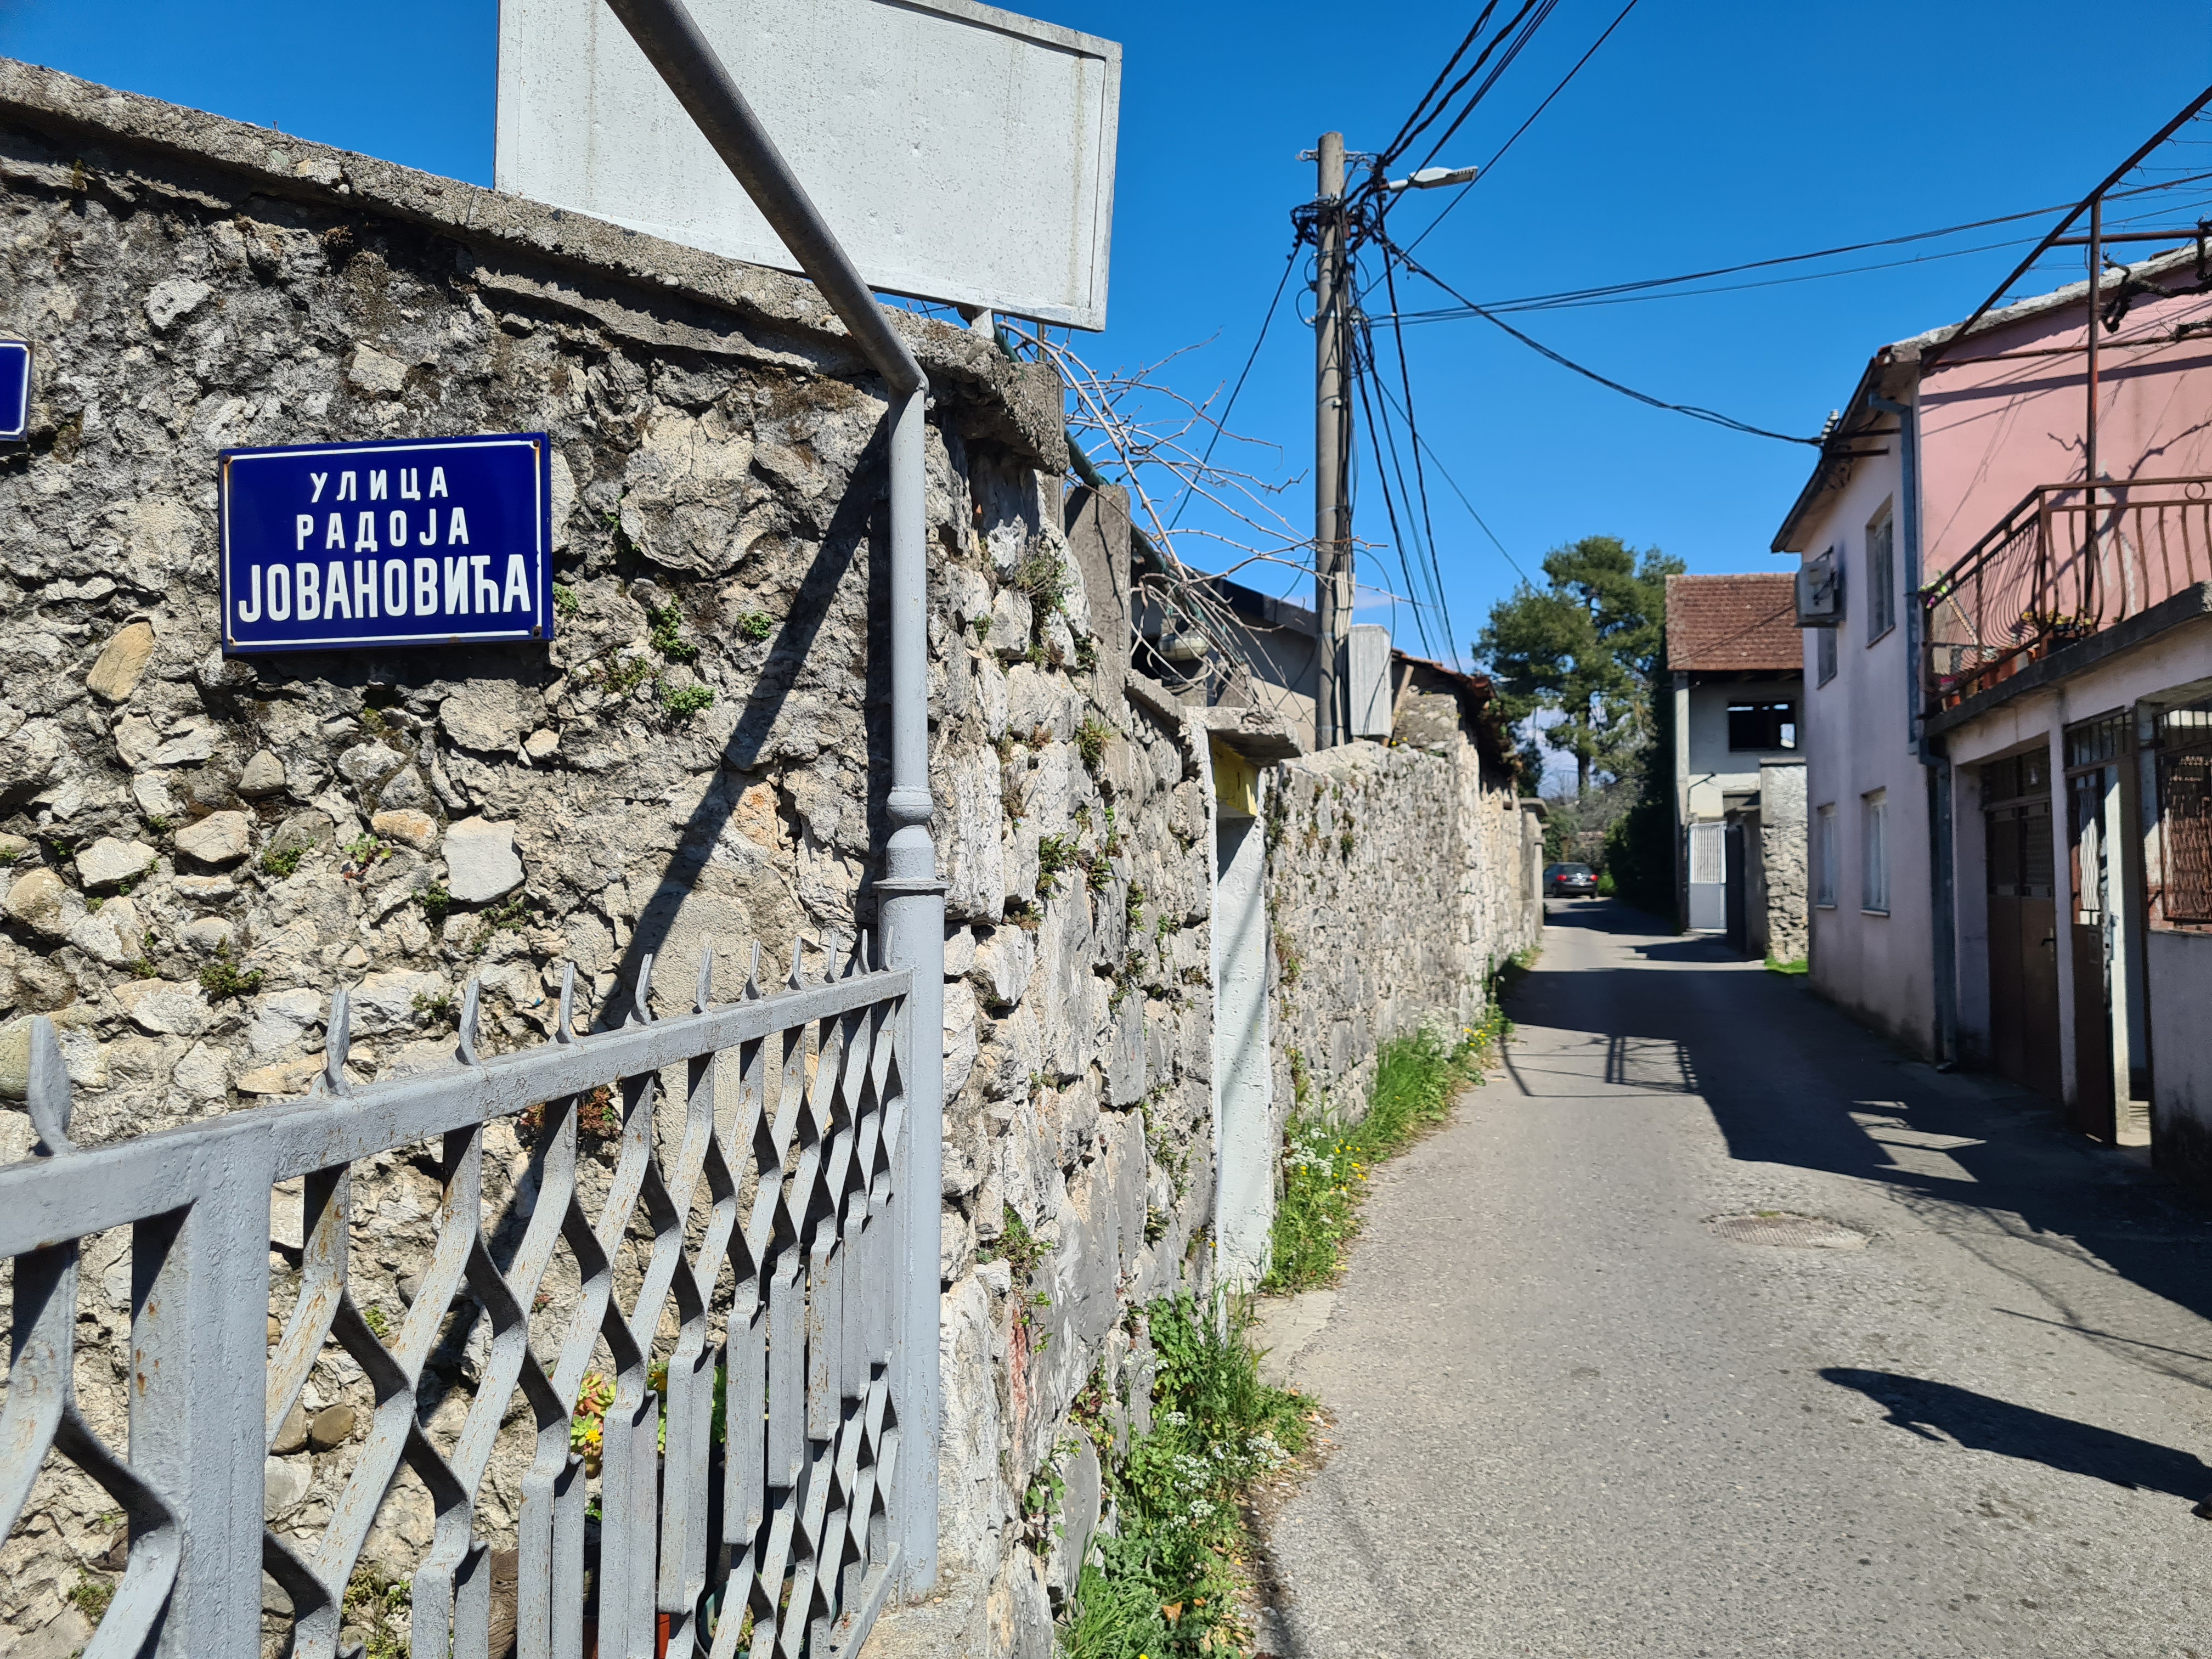 Počela rekonstrukcija još jedne ulice u Staroj varoši - Ulice Radoja Jovanovića